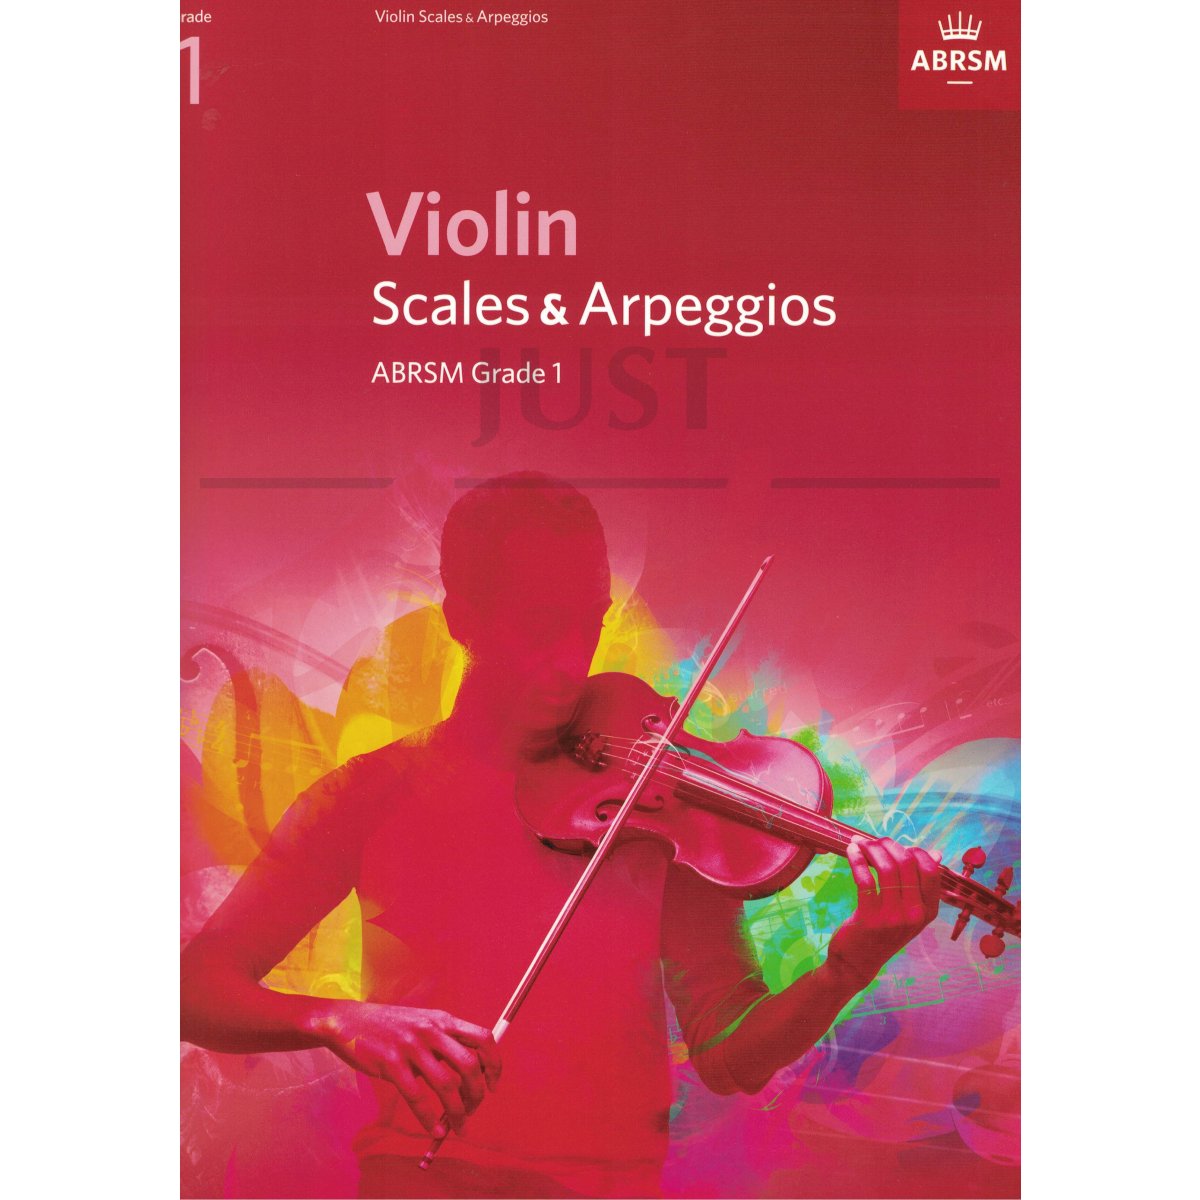 Scales and Arpeggios for Violin Grade 1